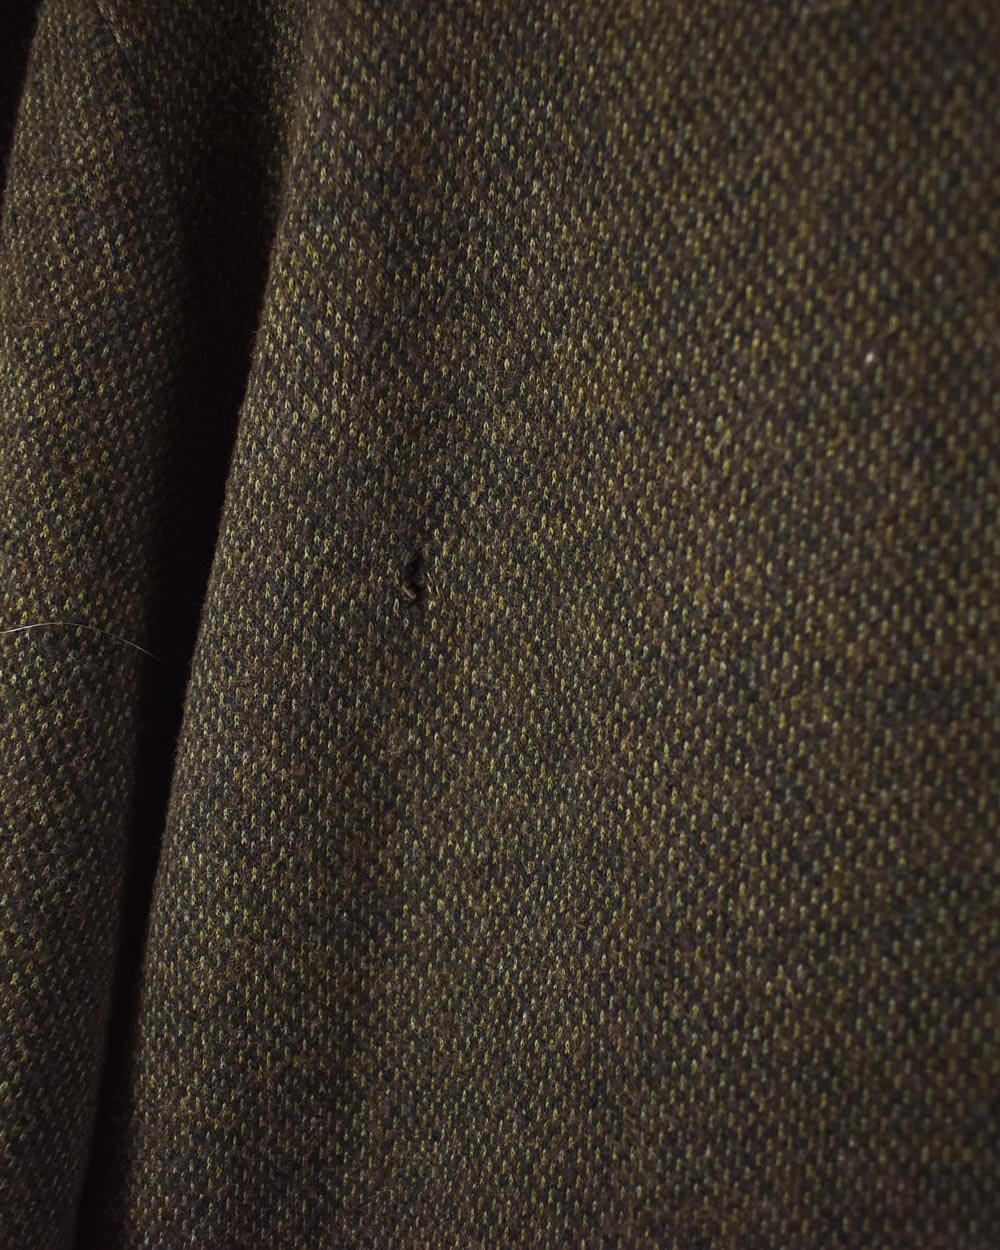 Brown Ralph Lauren Zip-Through Sweatshirt - X-Large